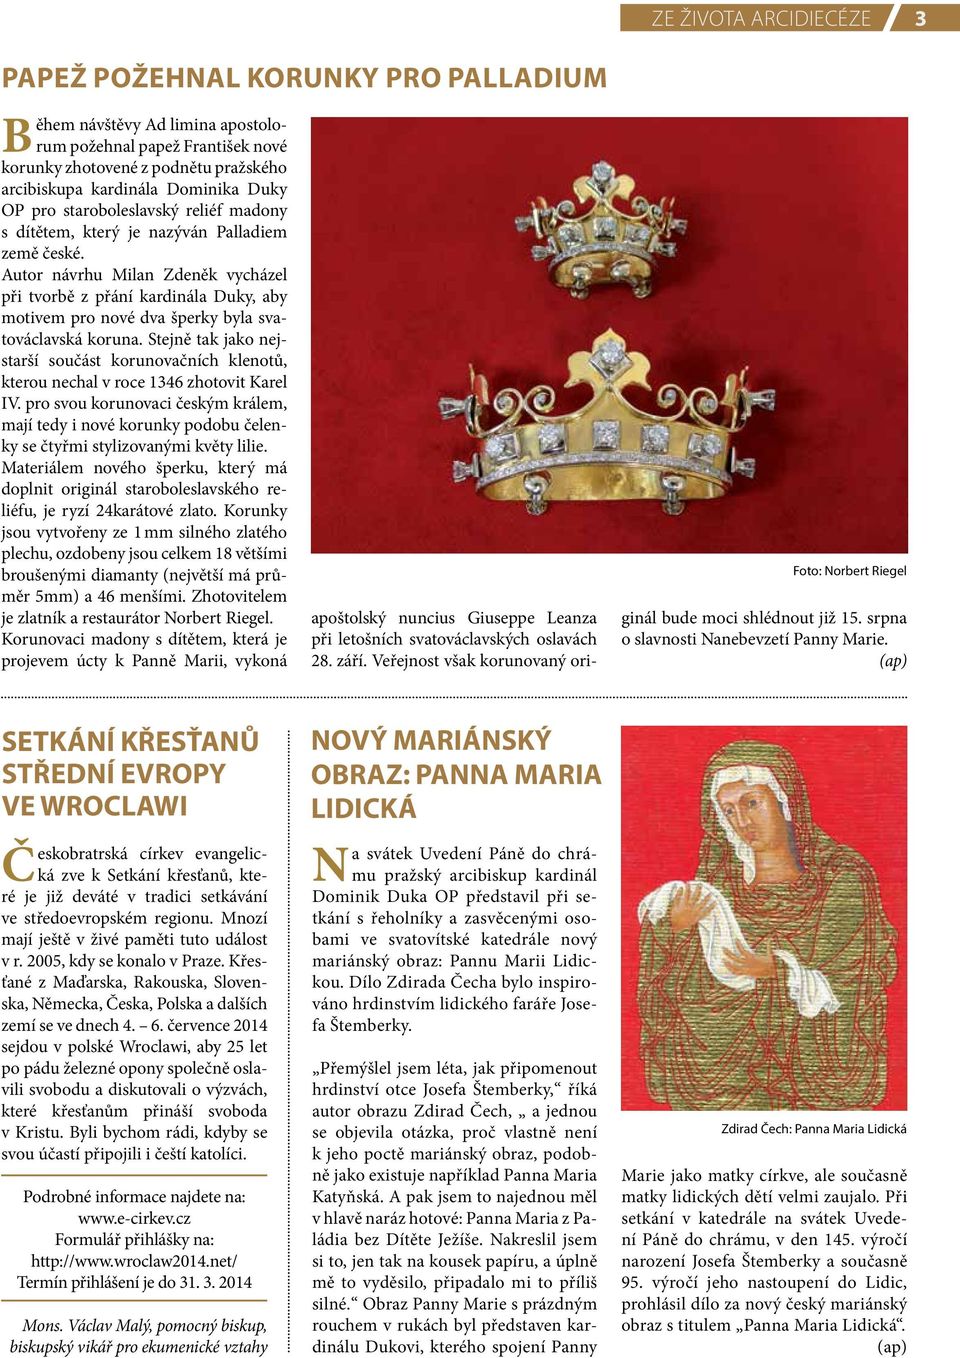 Autor návrhu Milan Zdeněk vycházel při tvorbě z přání kardinála Duky, aby motivem pro nové dva šperky byla svatováclavská koruna.